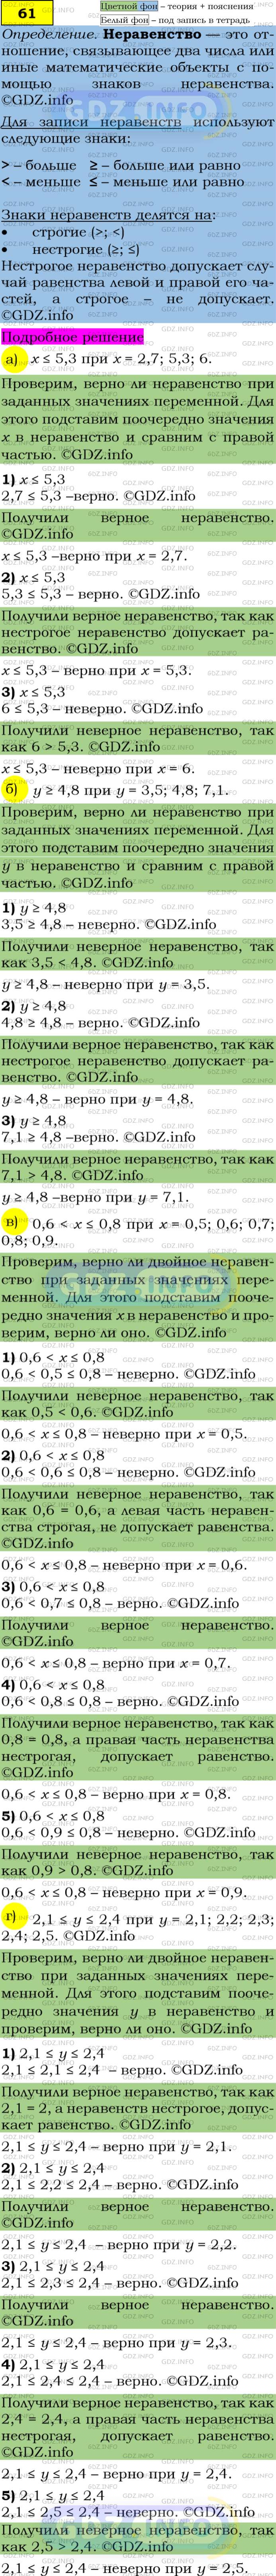 Фото решения 4: Номер задания №61 из ГДЗ по Алгебре 7 класс: Макарычев Ю.Н. г.